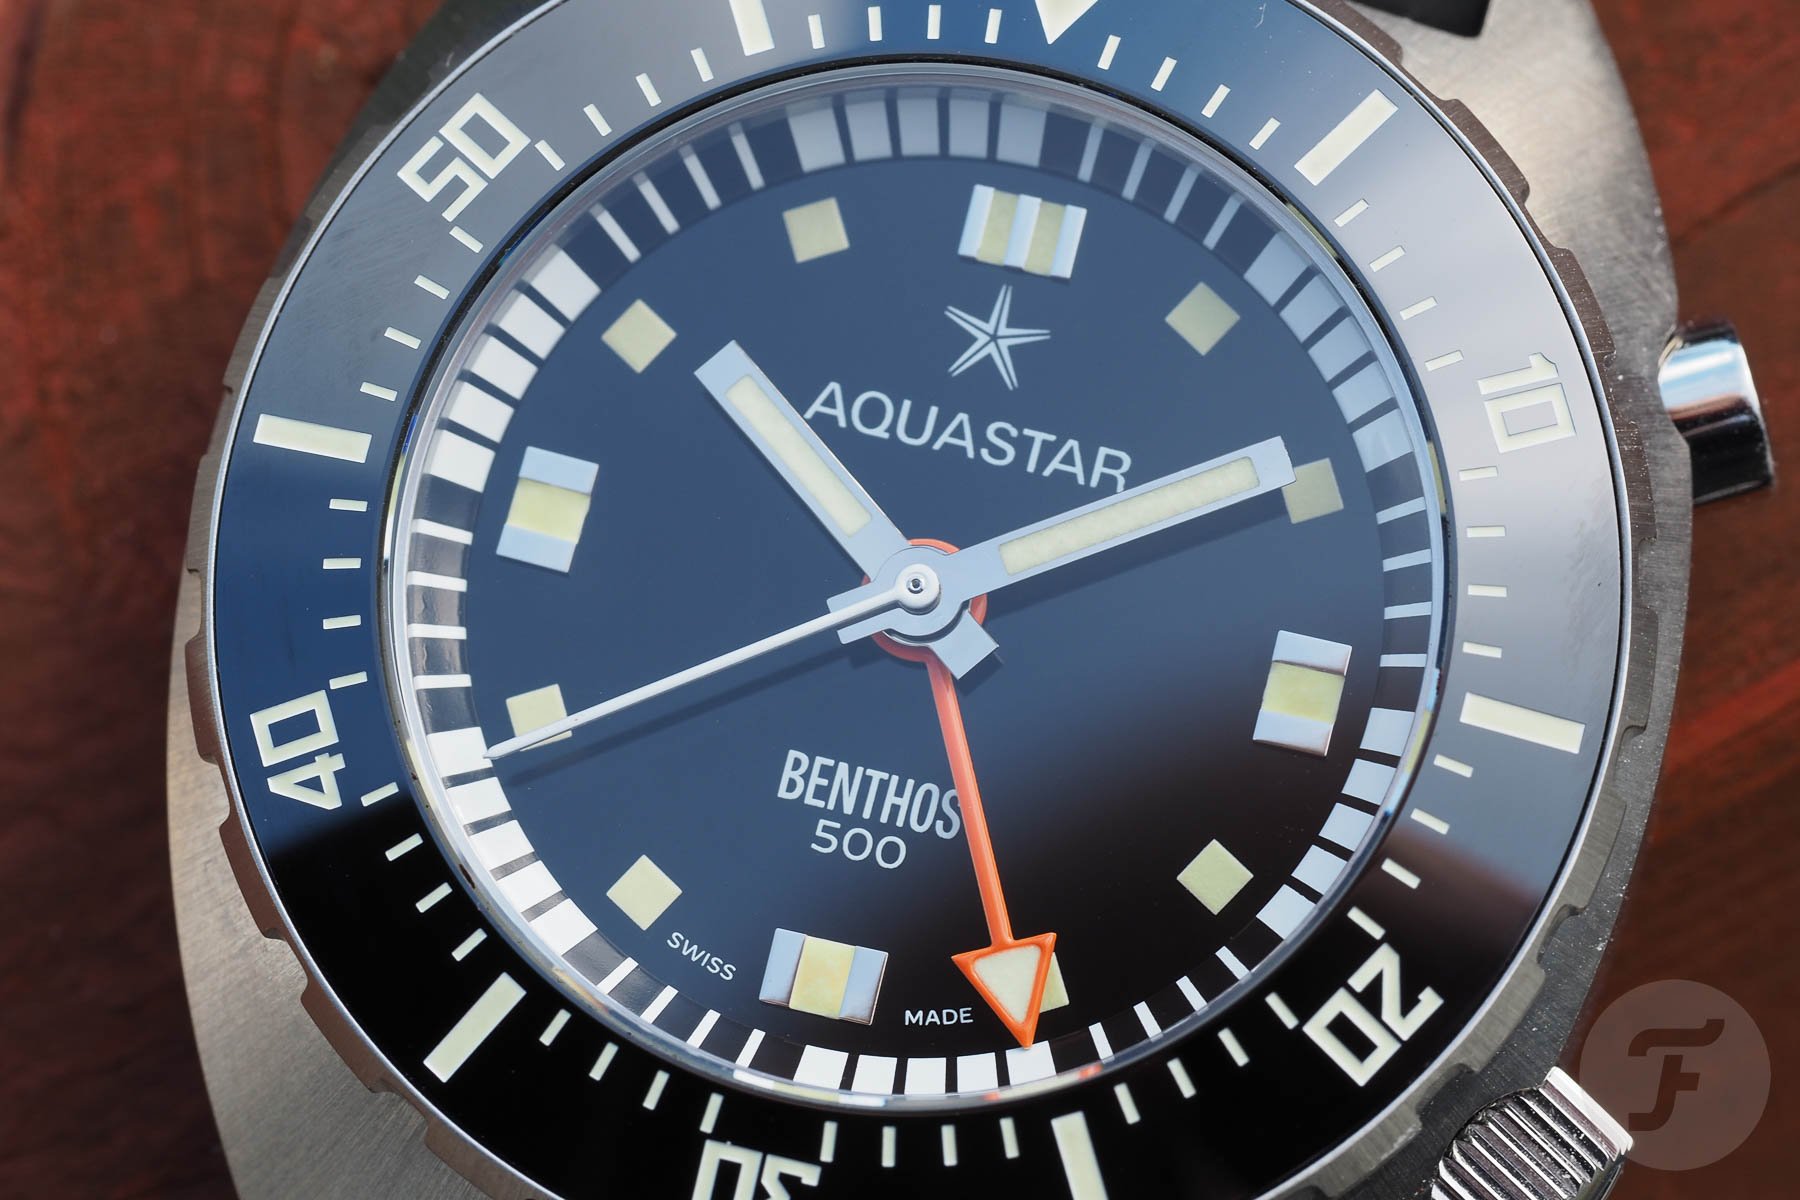 Aquastar Benthos 500 Founder’s Edition Chronograph dial close-up